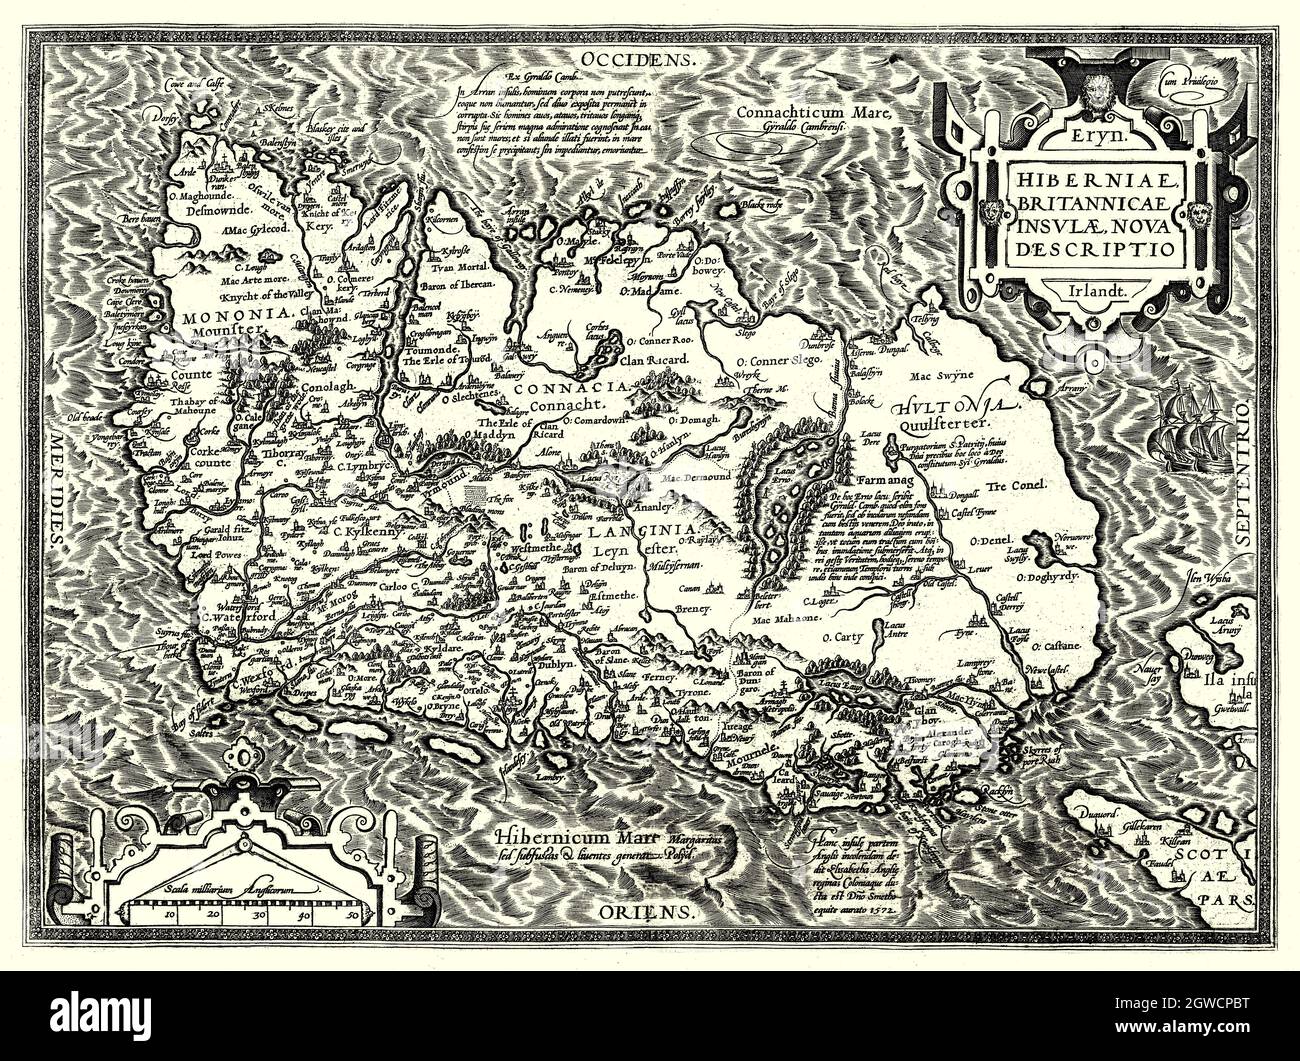 Hiberniae, Britannicae Insvlae Nova descripto.' Übersetzung: Eine neue  Beschreibung von Irland und der britischen Insel, ist in Latein und liegt  mit seiner Nordküste im Westen. Die Karte wurde 1598 von Abraham Ortelius (